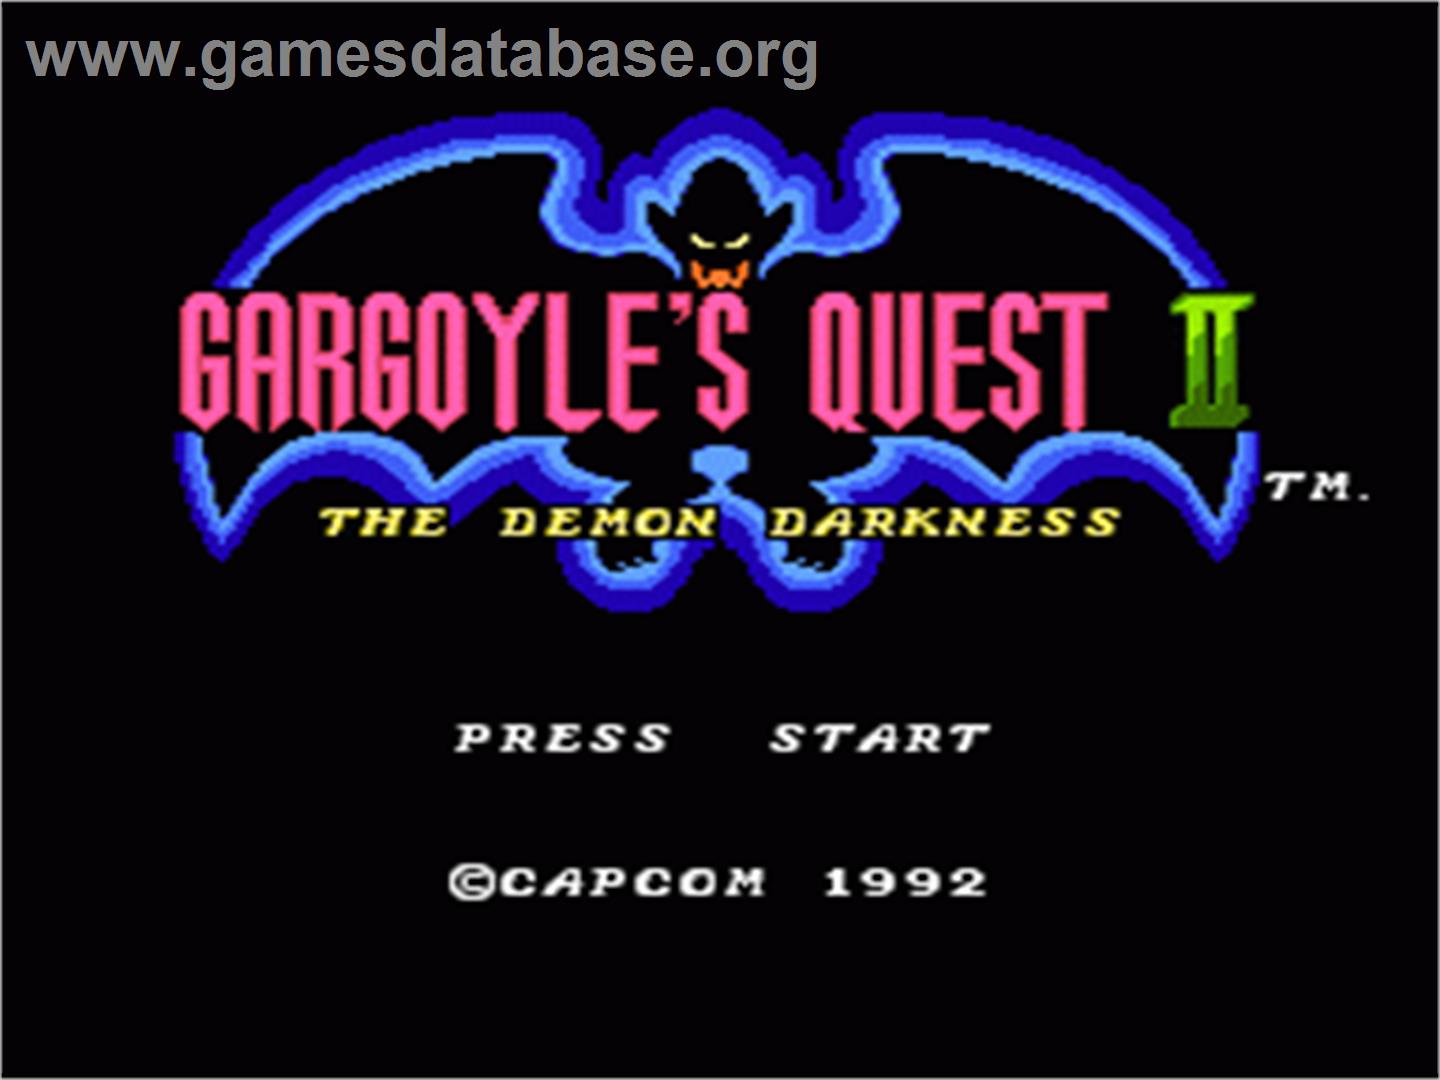 Gargoyle's Quest II: The Demon Darkness - Nintendo NES - Artwork - Title Screen